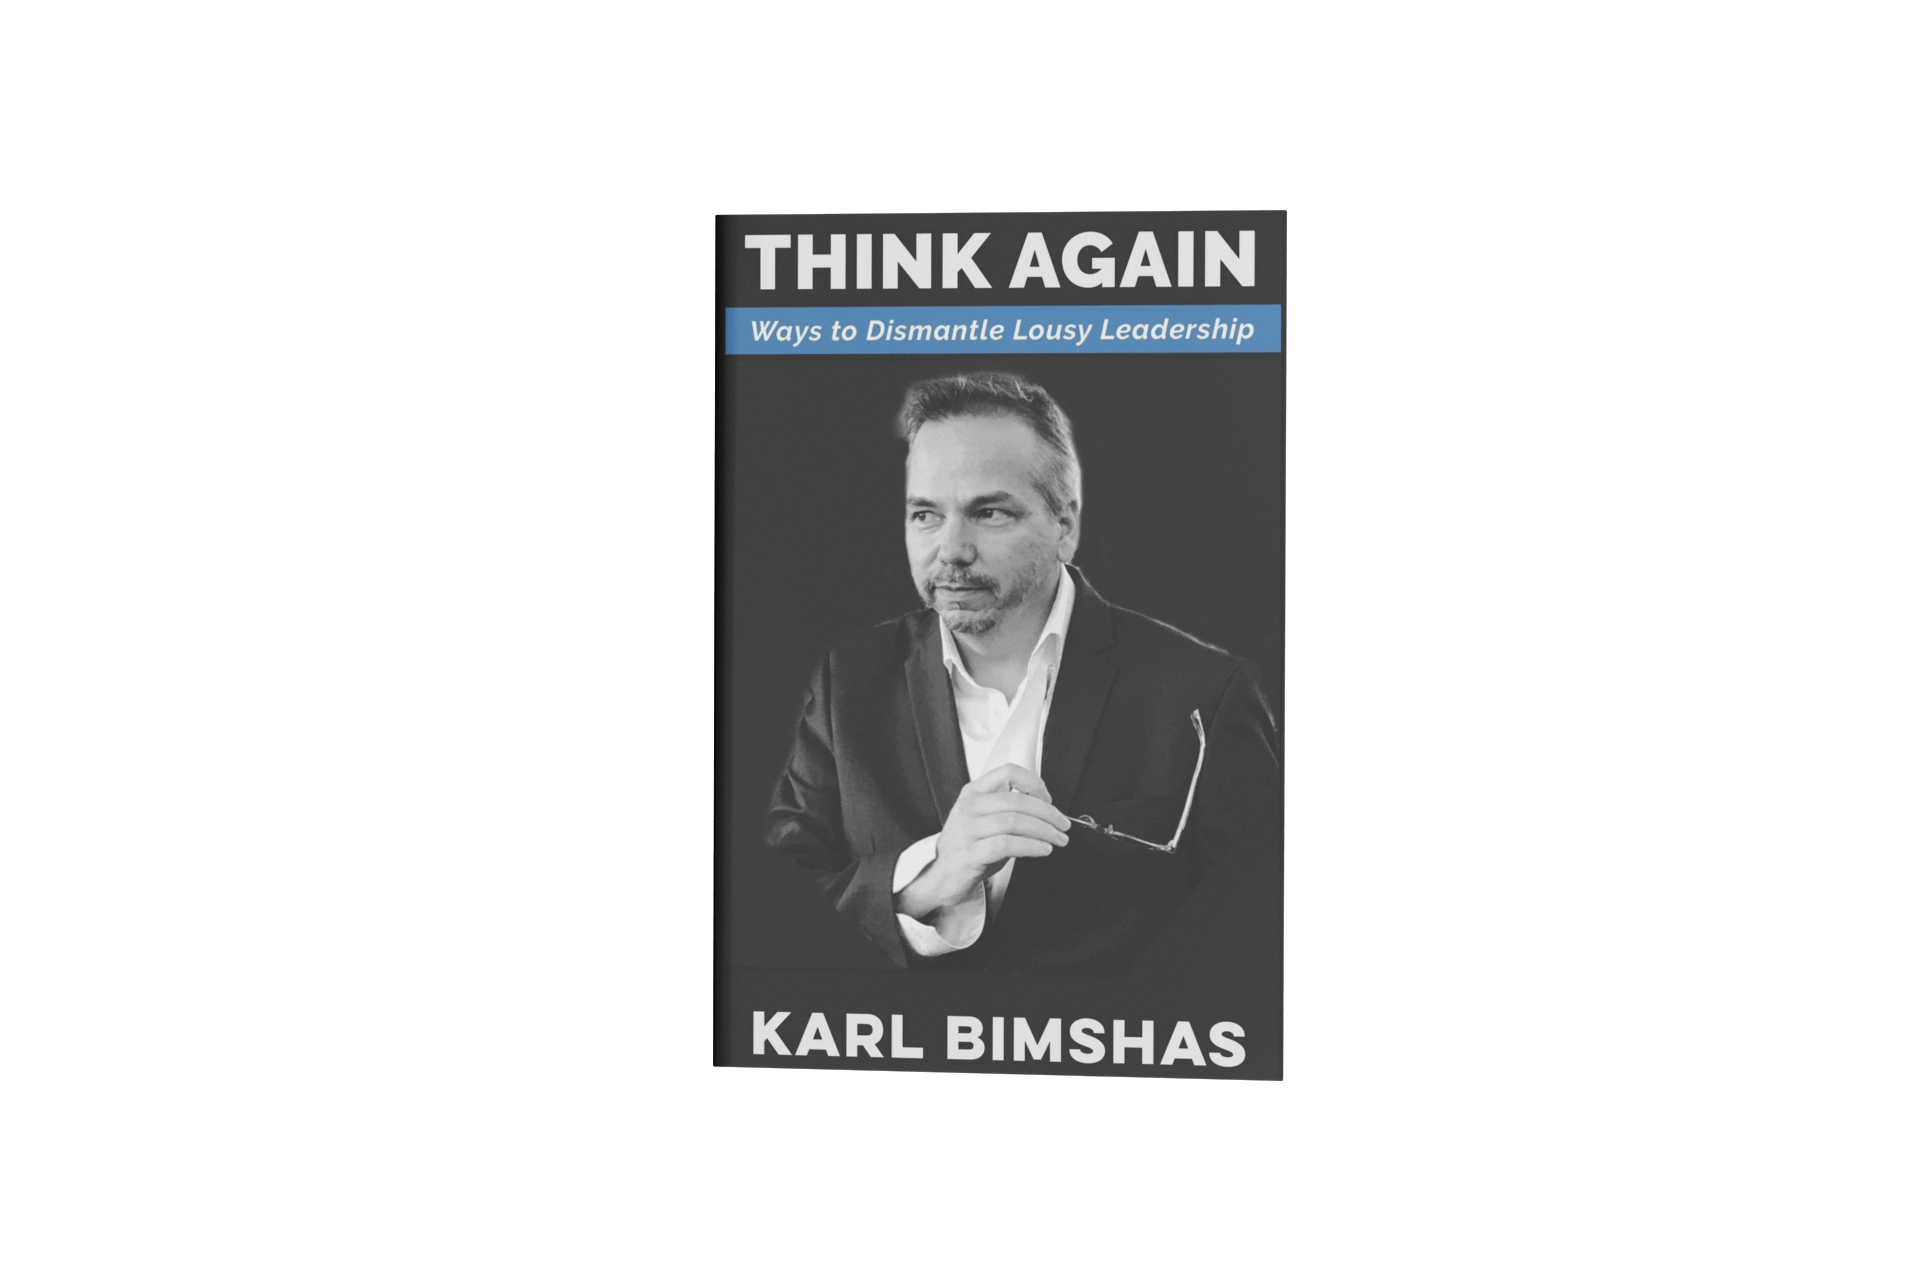 Think Again by Karl Bimshas